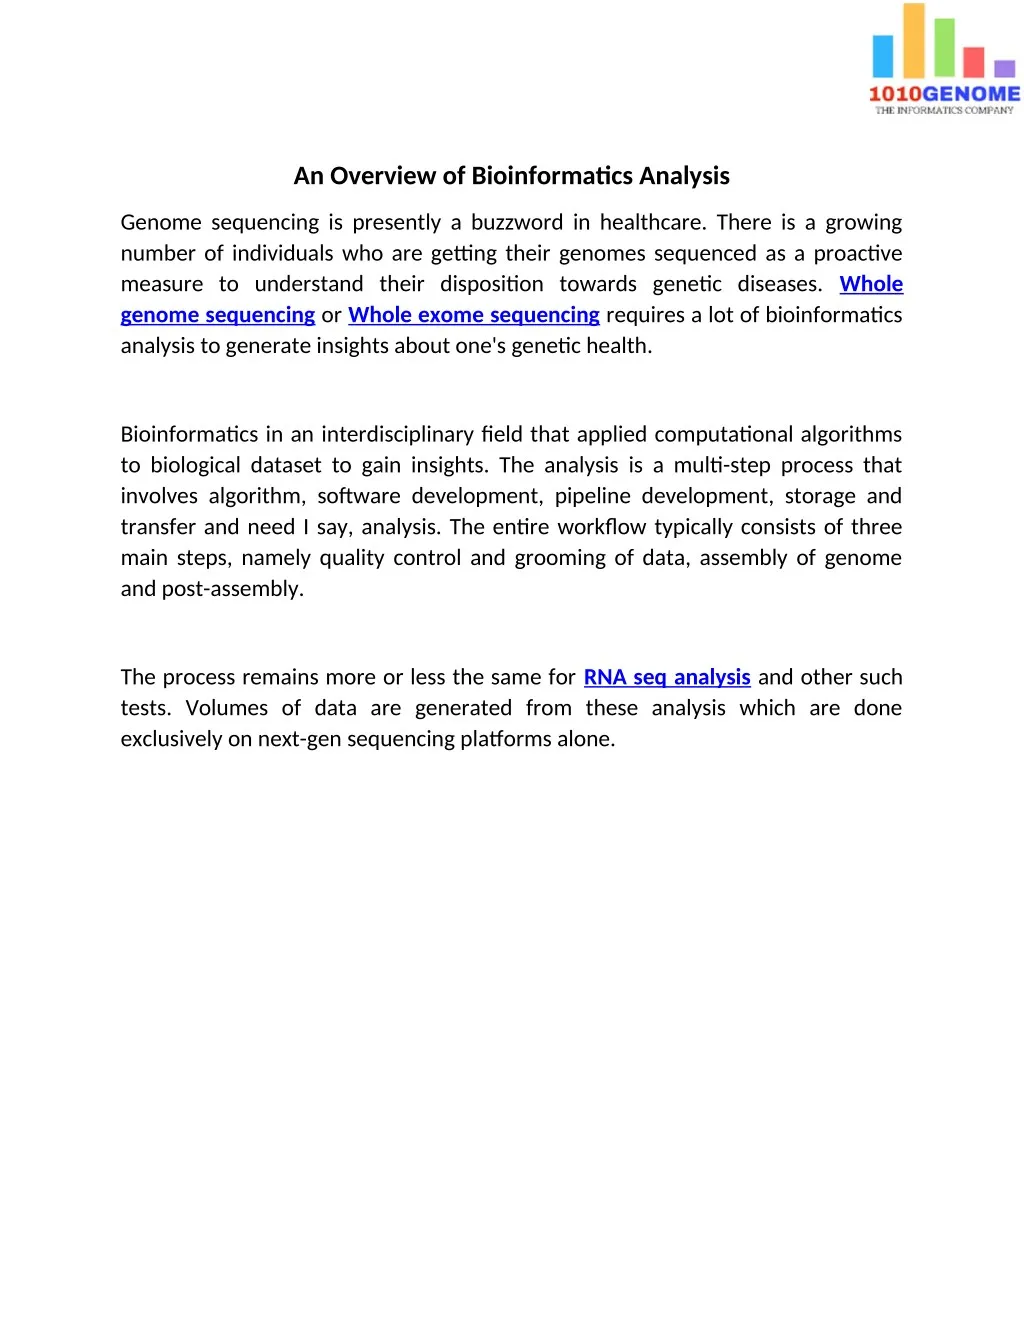 an overview of bioinformatics analysis